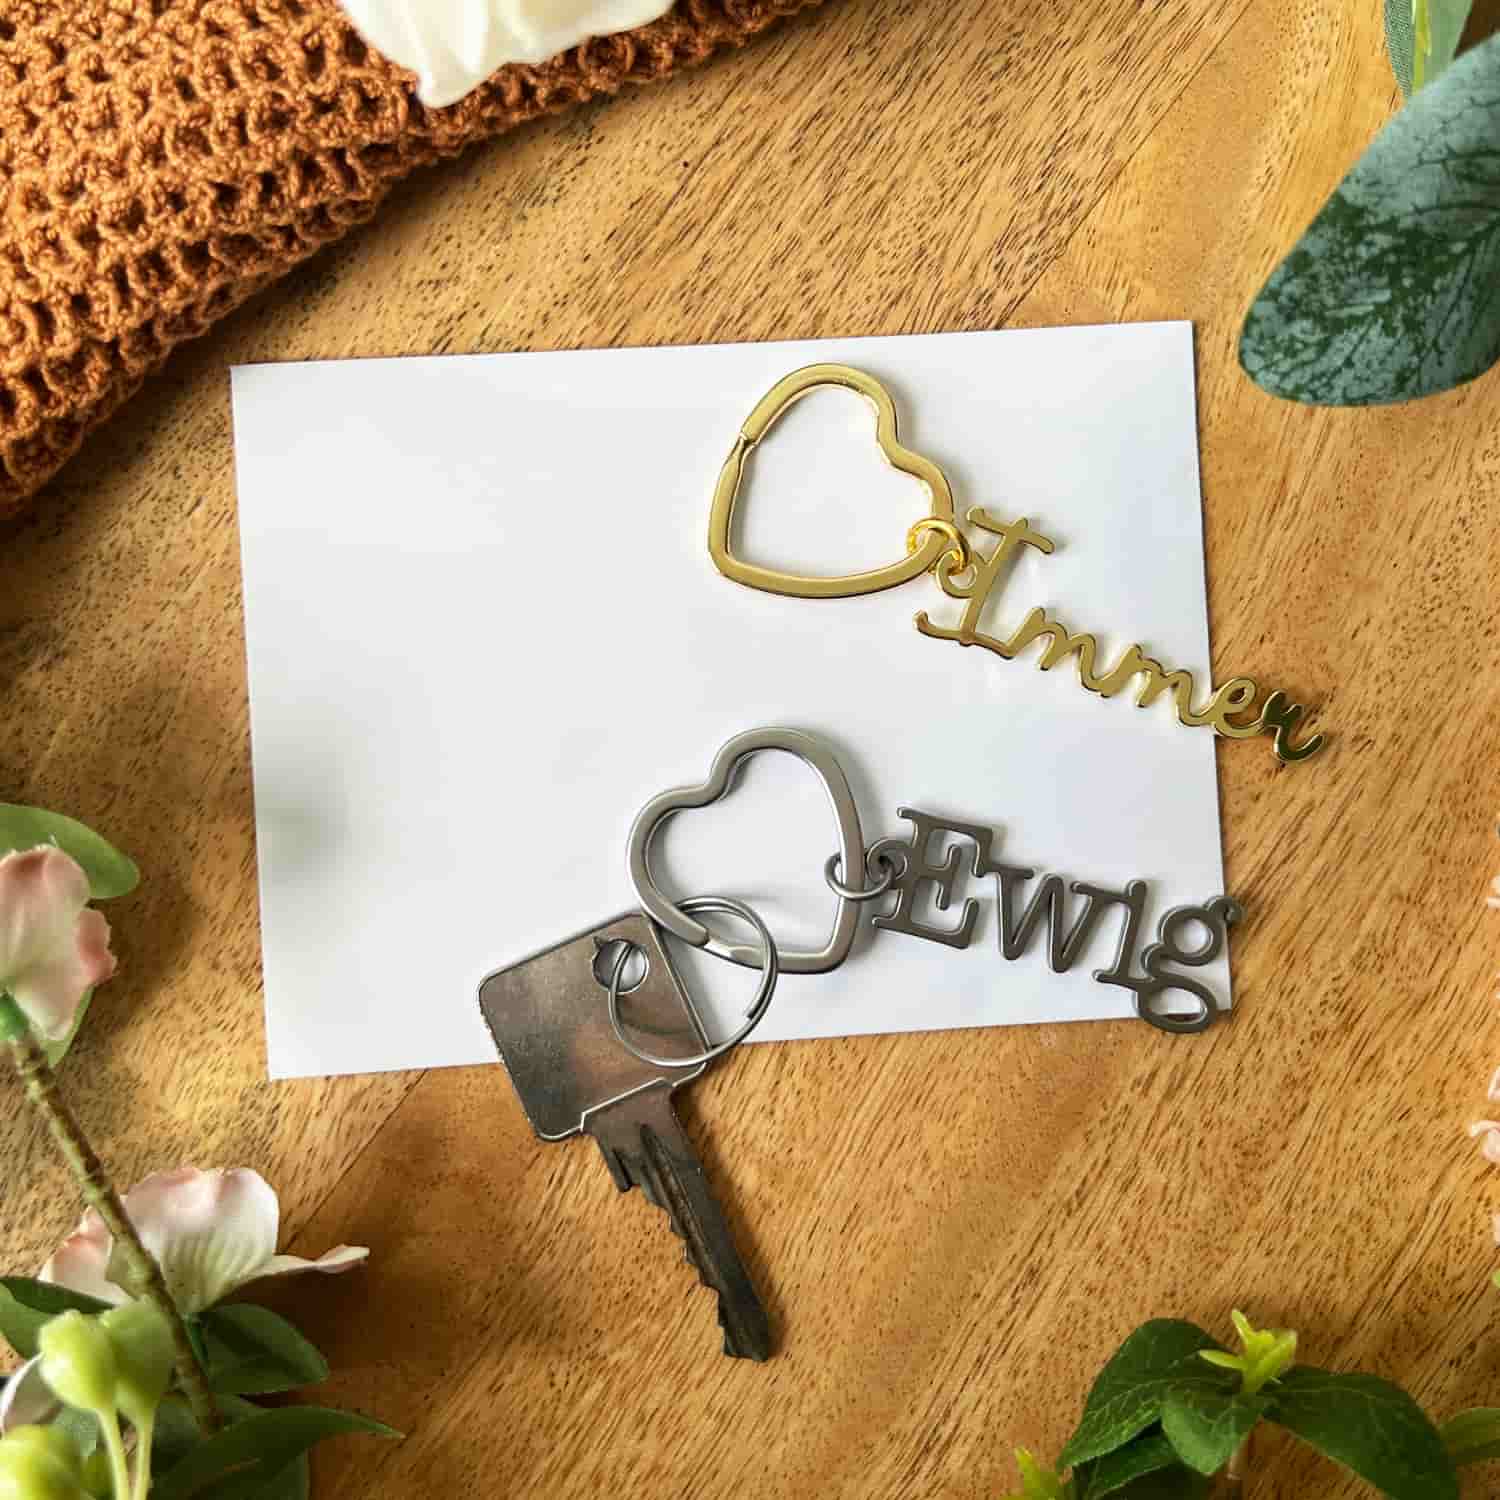 Schlüsselanhänger-Set mit einmal dem Wort "Immer" in der Farbe gold und dem Wort "Ewig" in der Farbe silber